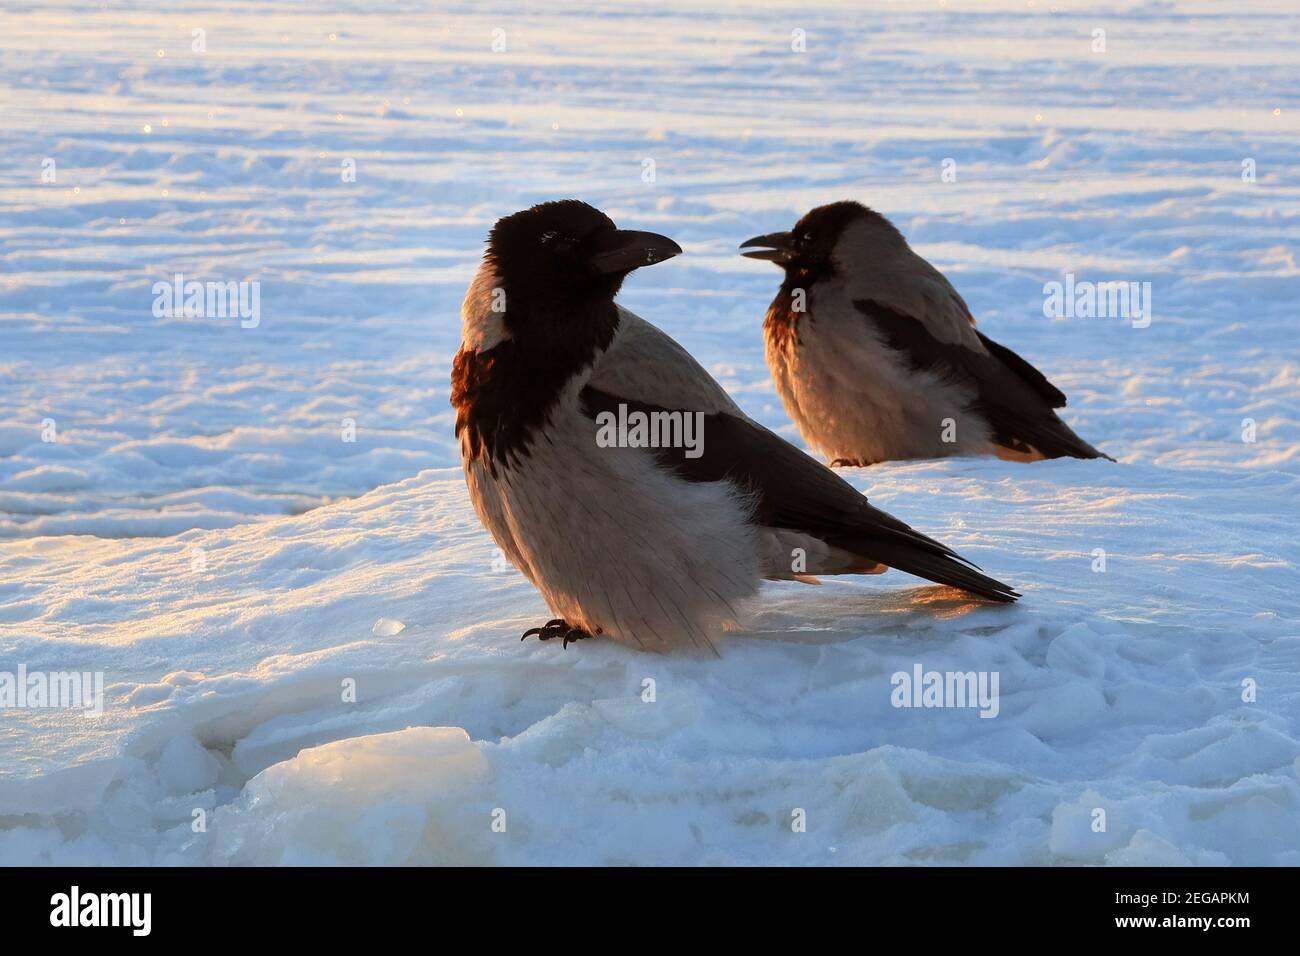 Deux corneilles à capuchon, corvus cornix, perchées sur une mer couverte de glace, le matin froid de février. Par temps froid, les sourcils ont du gel sur leurs sourcils. Banque D'Images